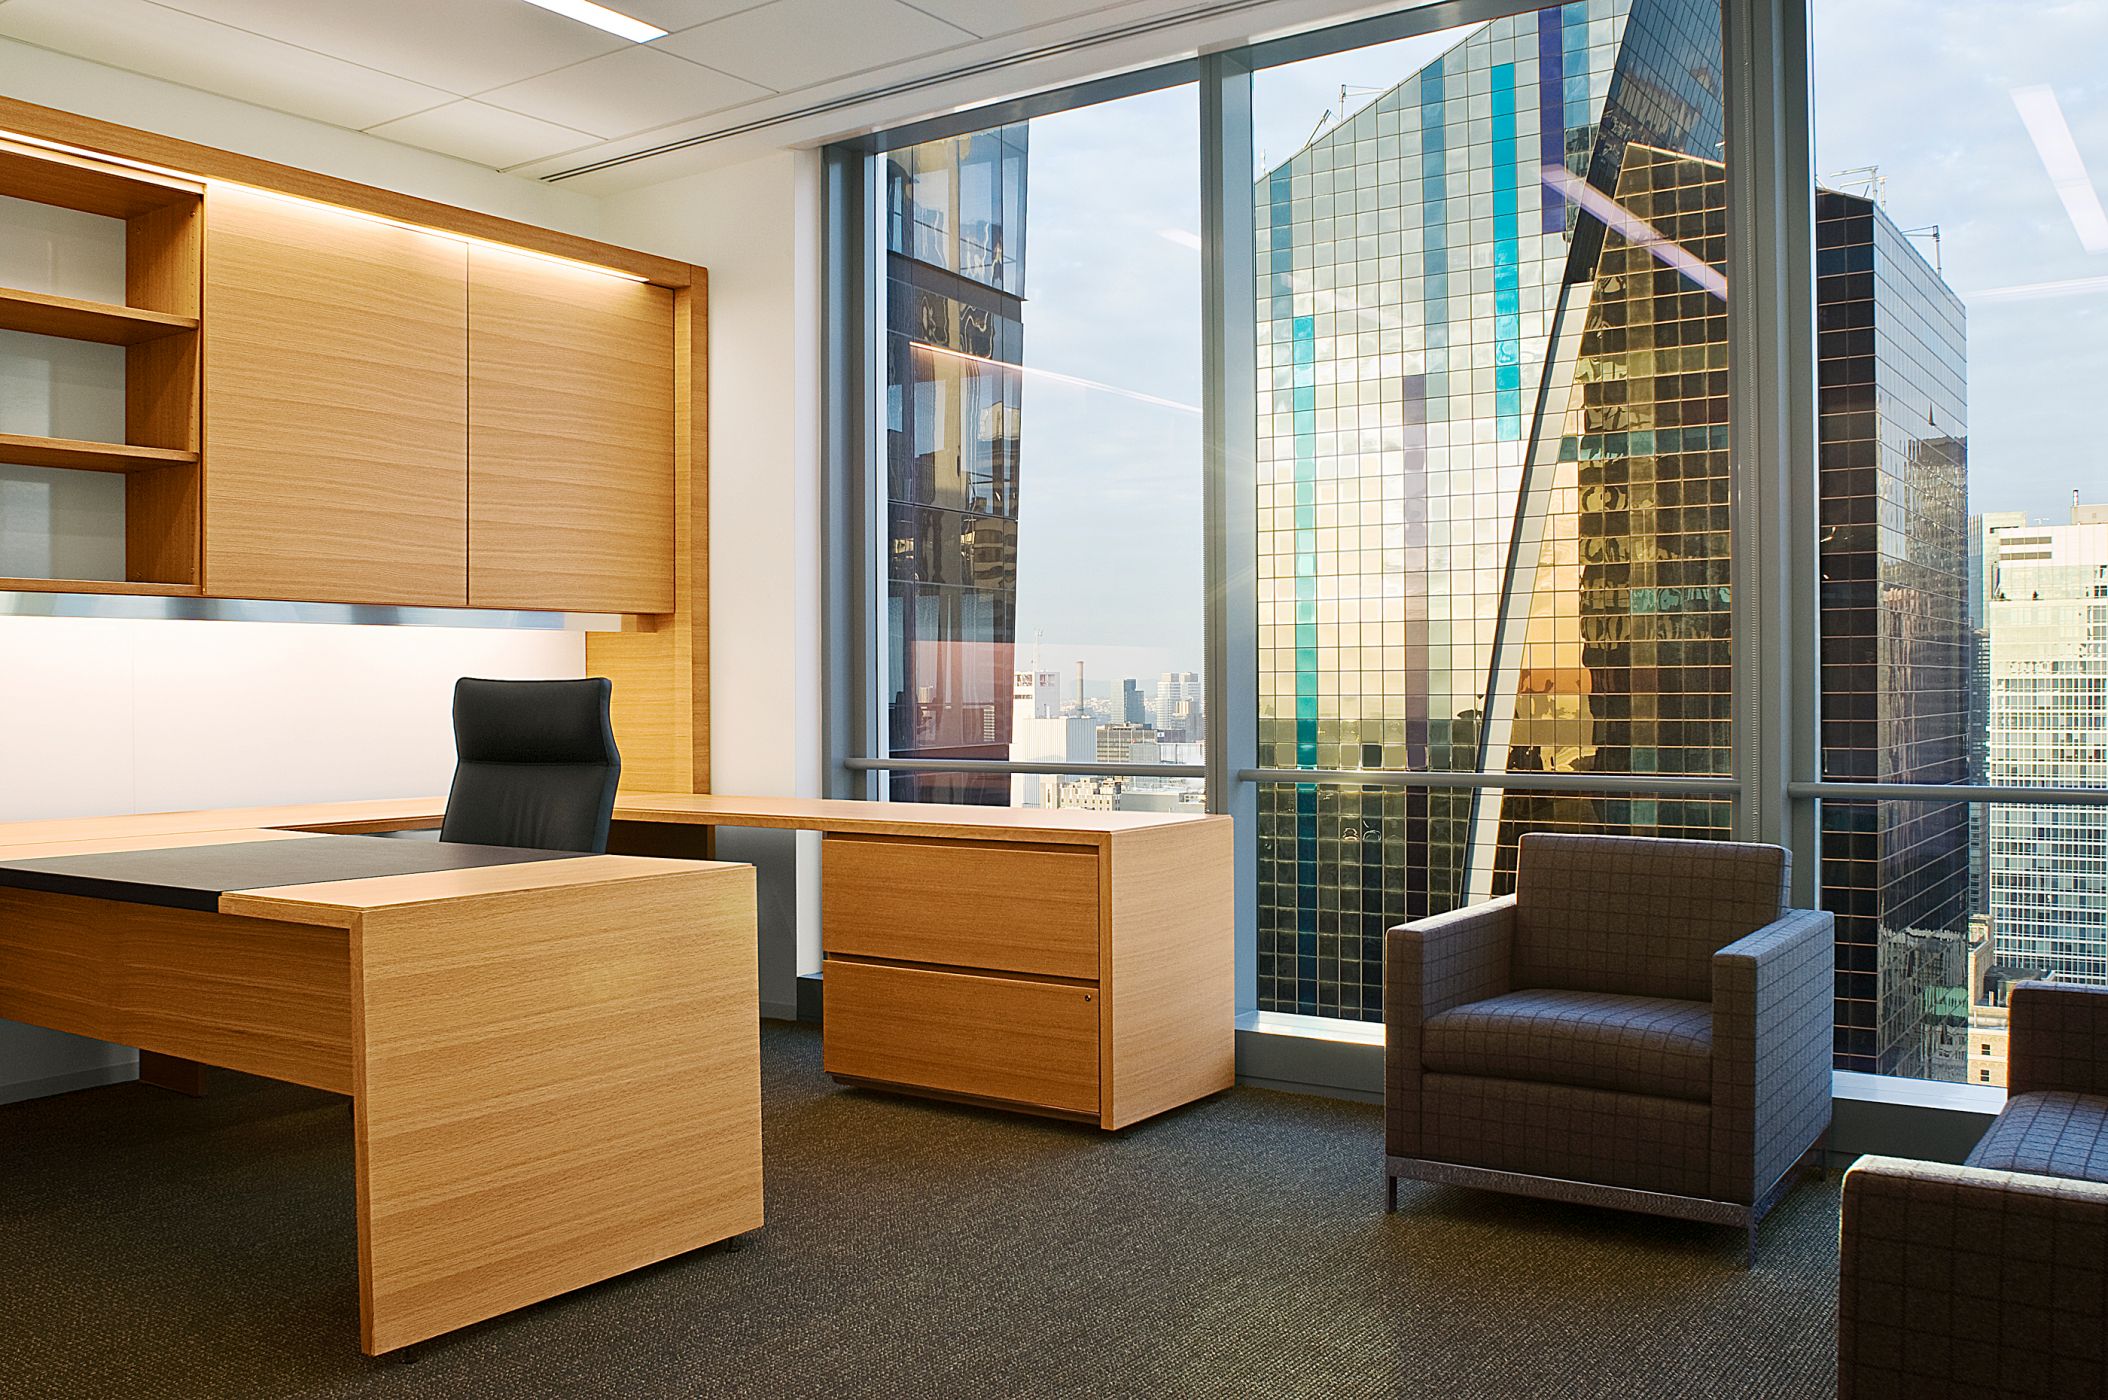 Offices incorporate cerused oak veneers, sliding doors, metal detailing, and integrated lighting. 